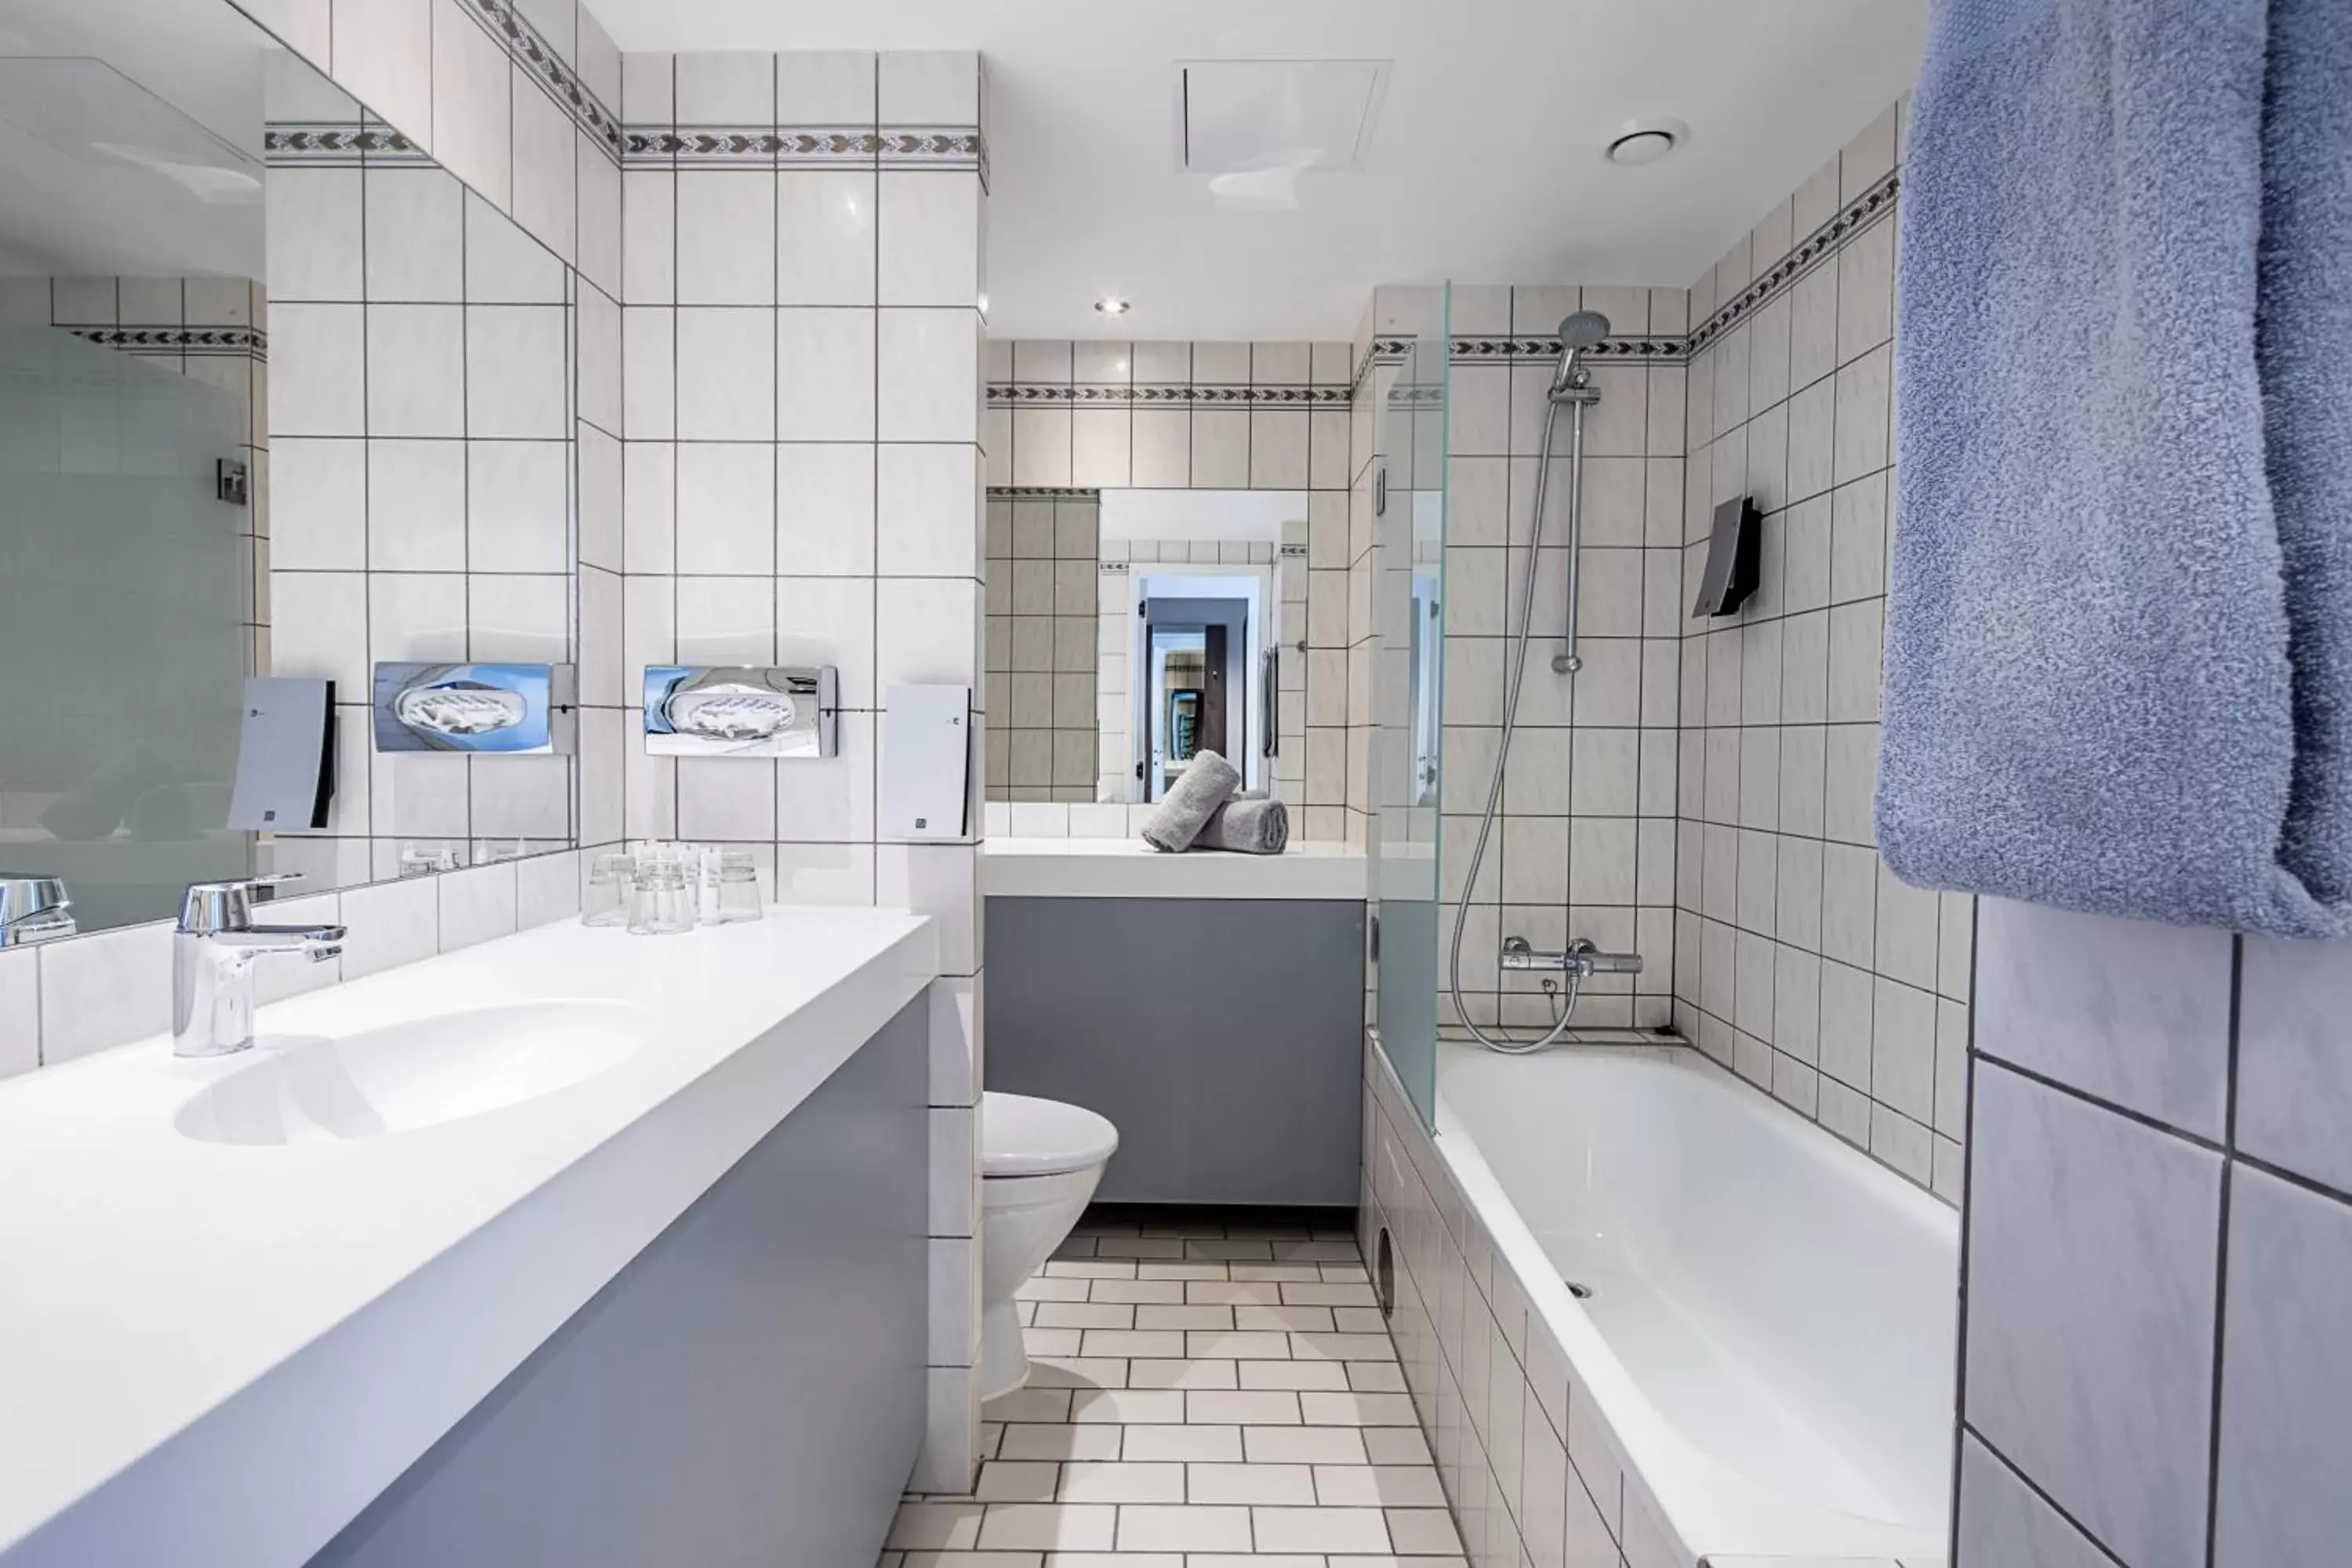 Toilet, Bathroom in Best Western Plus Airport Hotel